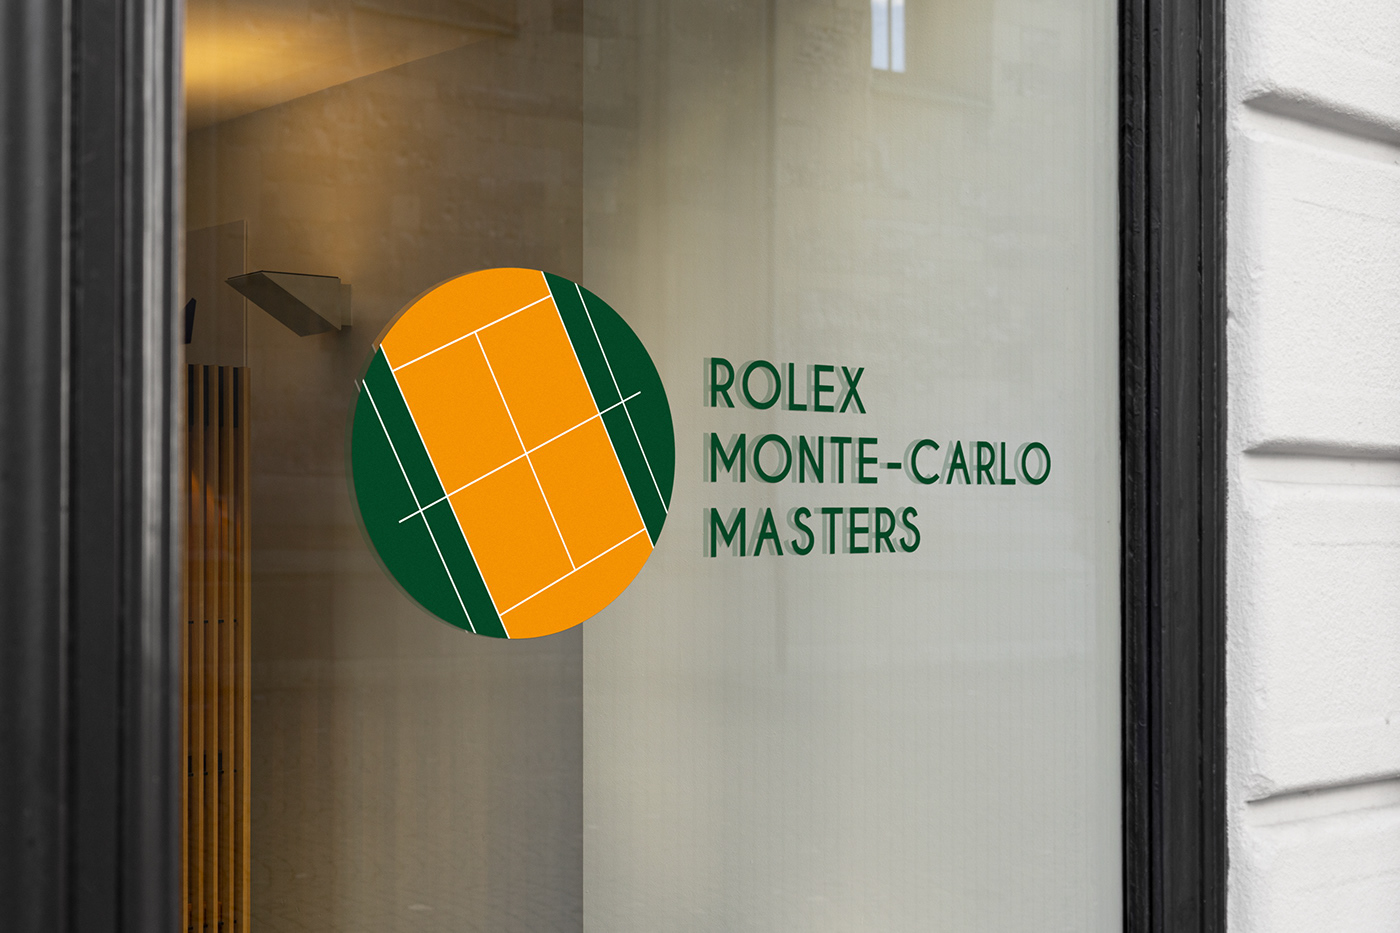 france Ientité visuelle Mont-carlo rebranding rolex rolex Monte-carlo masters tennis